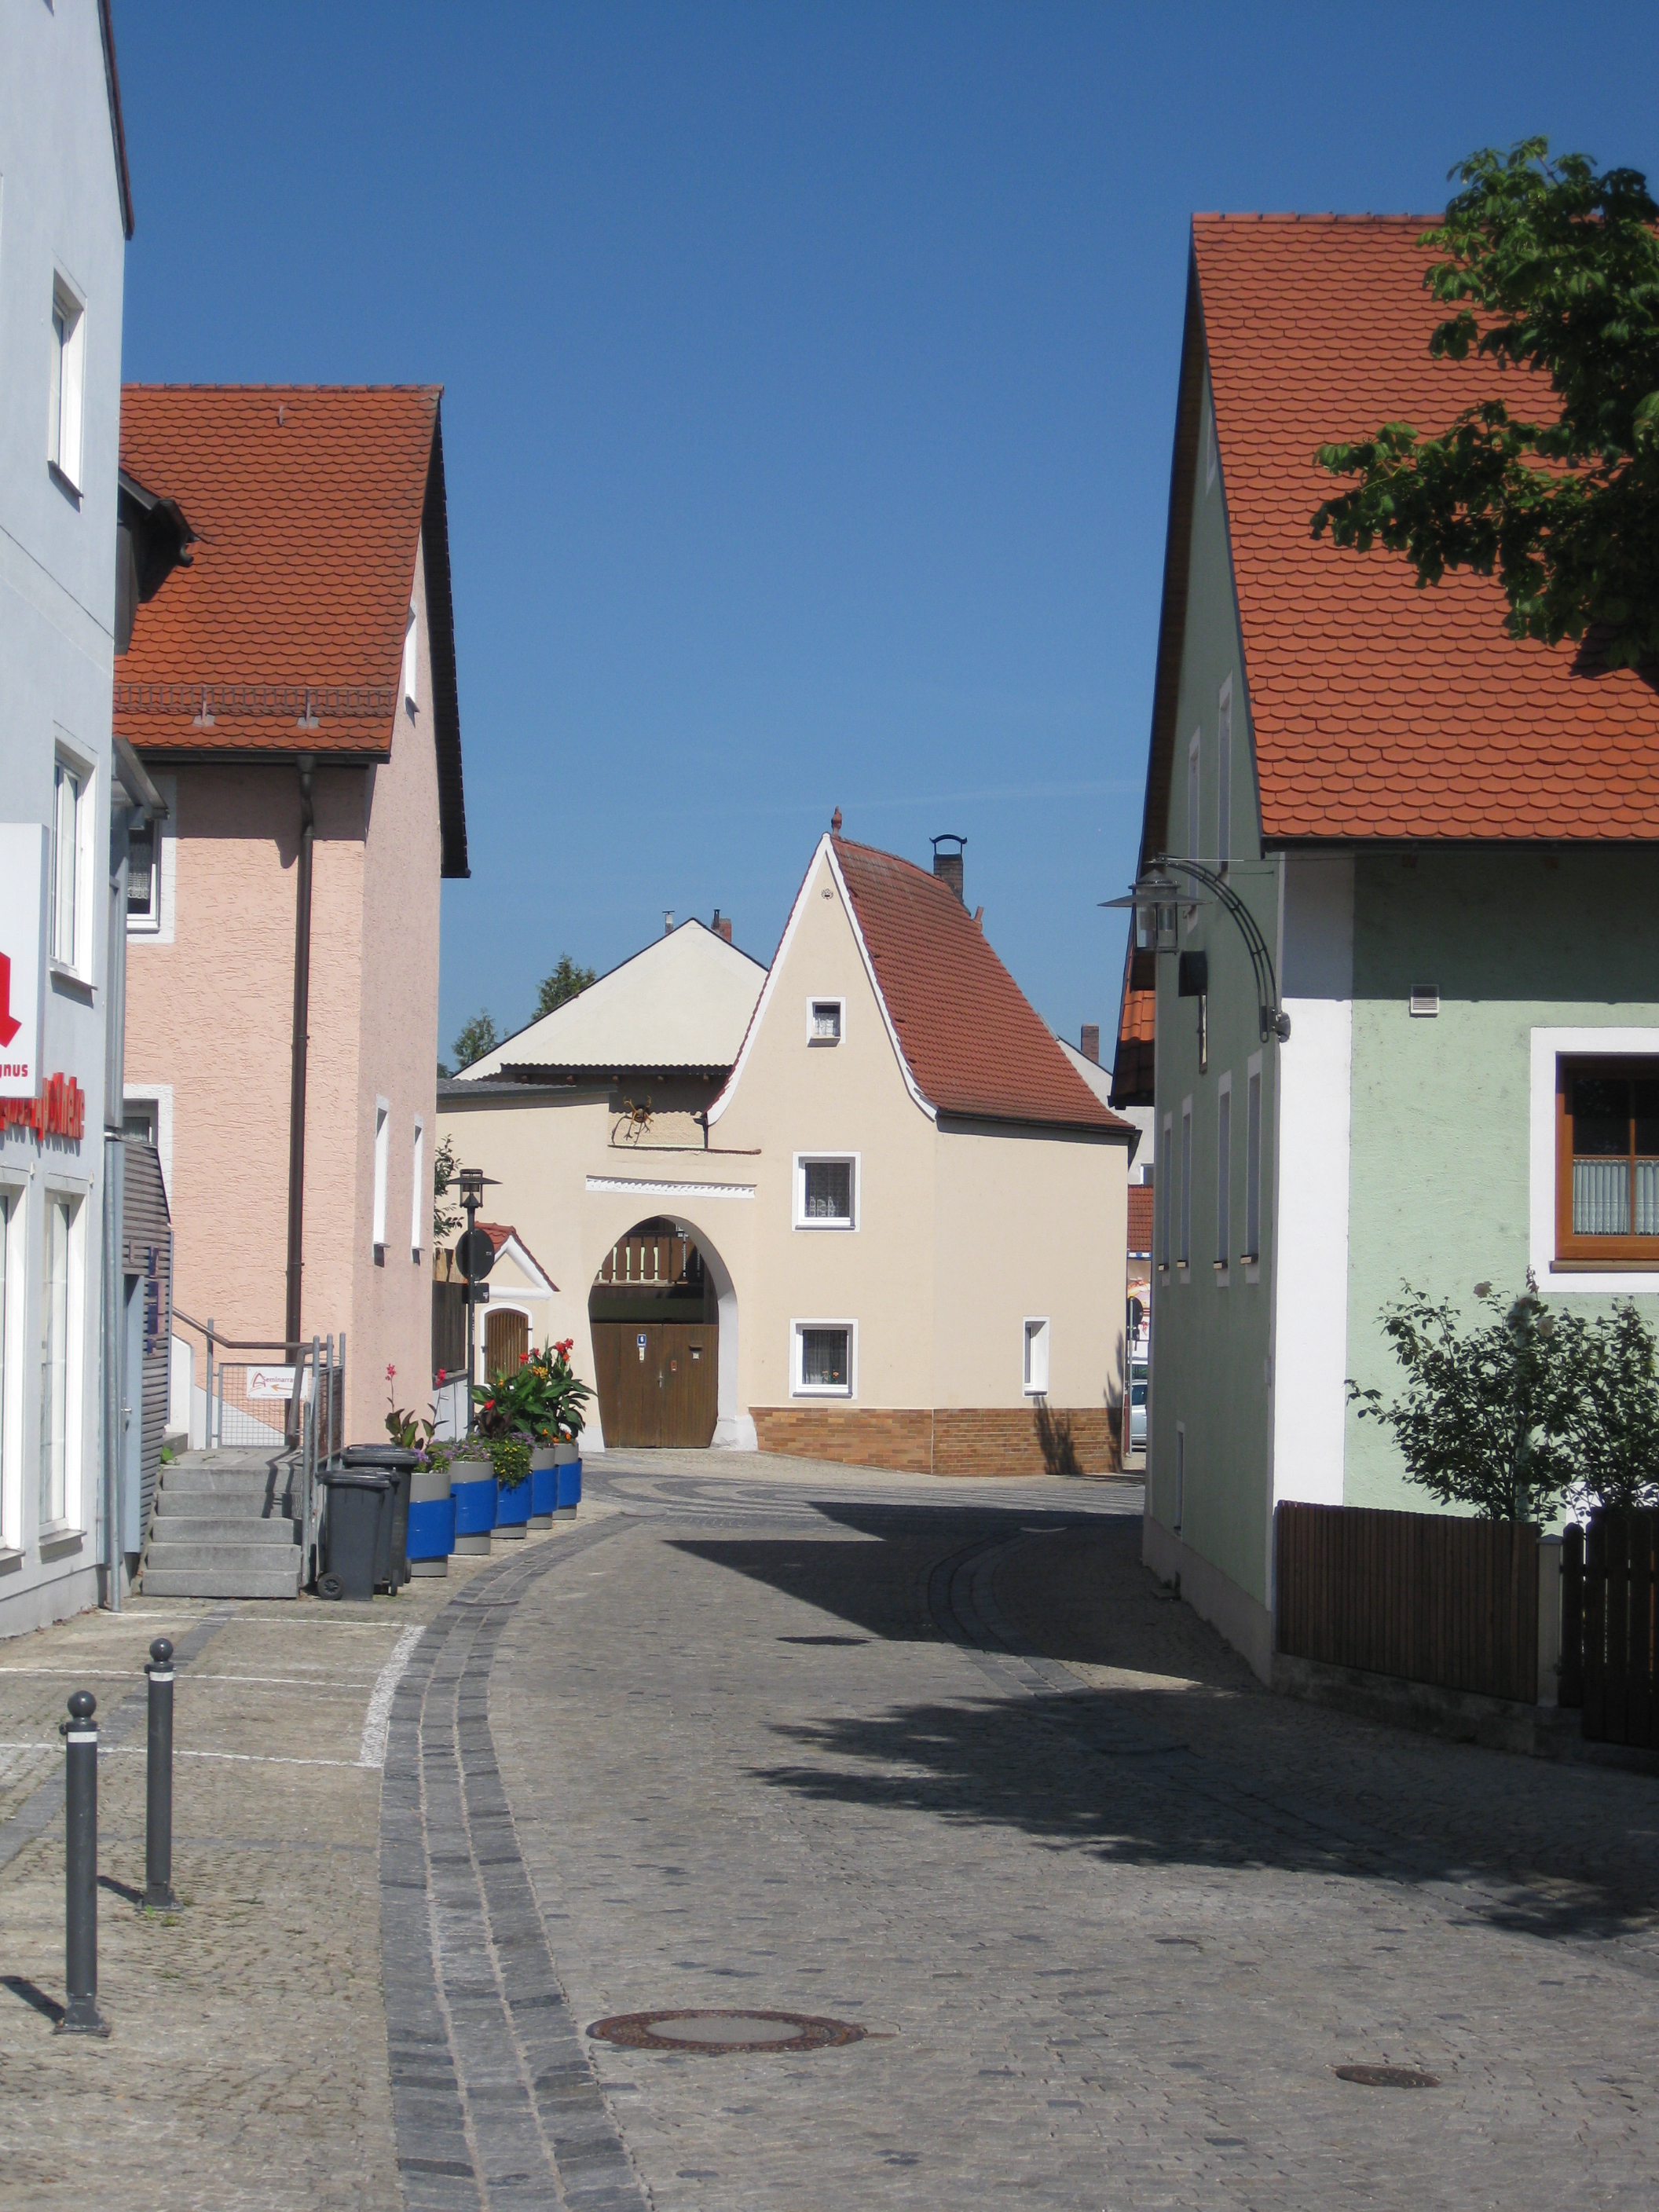 Ortsdurchfahrt Lappersdorf mit Blick auf Zeitlerhaus